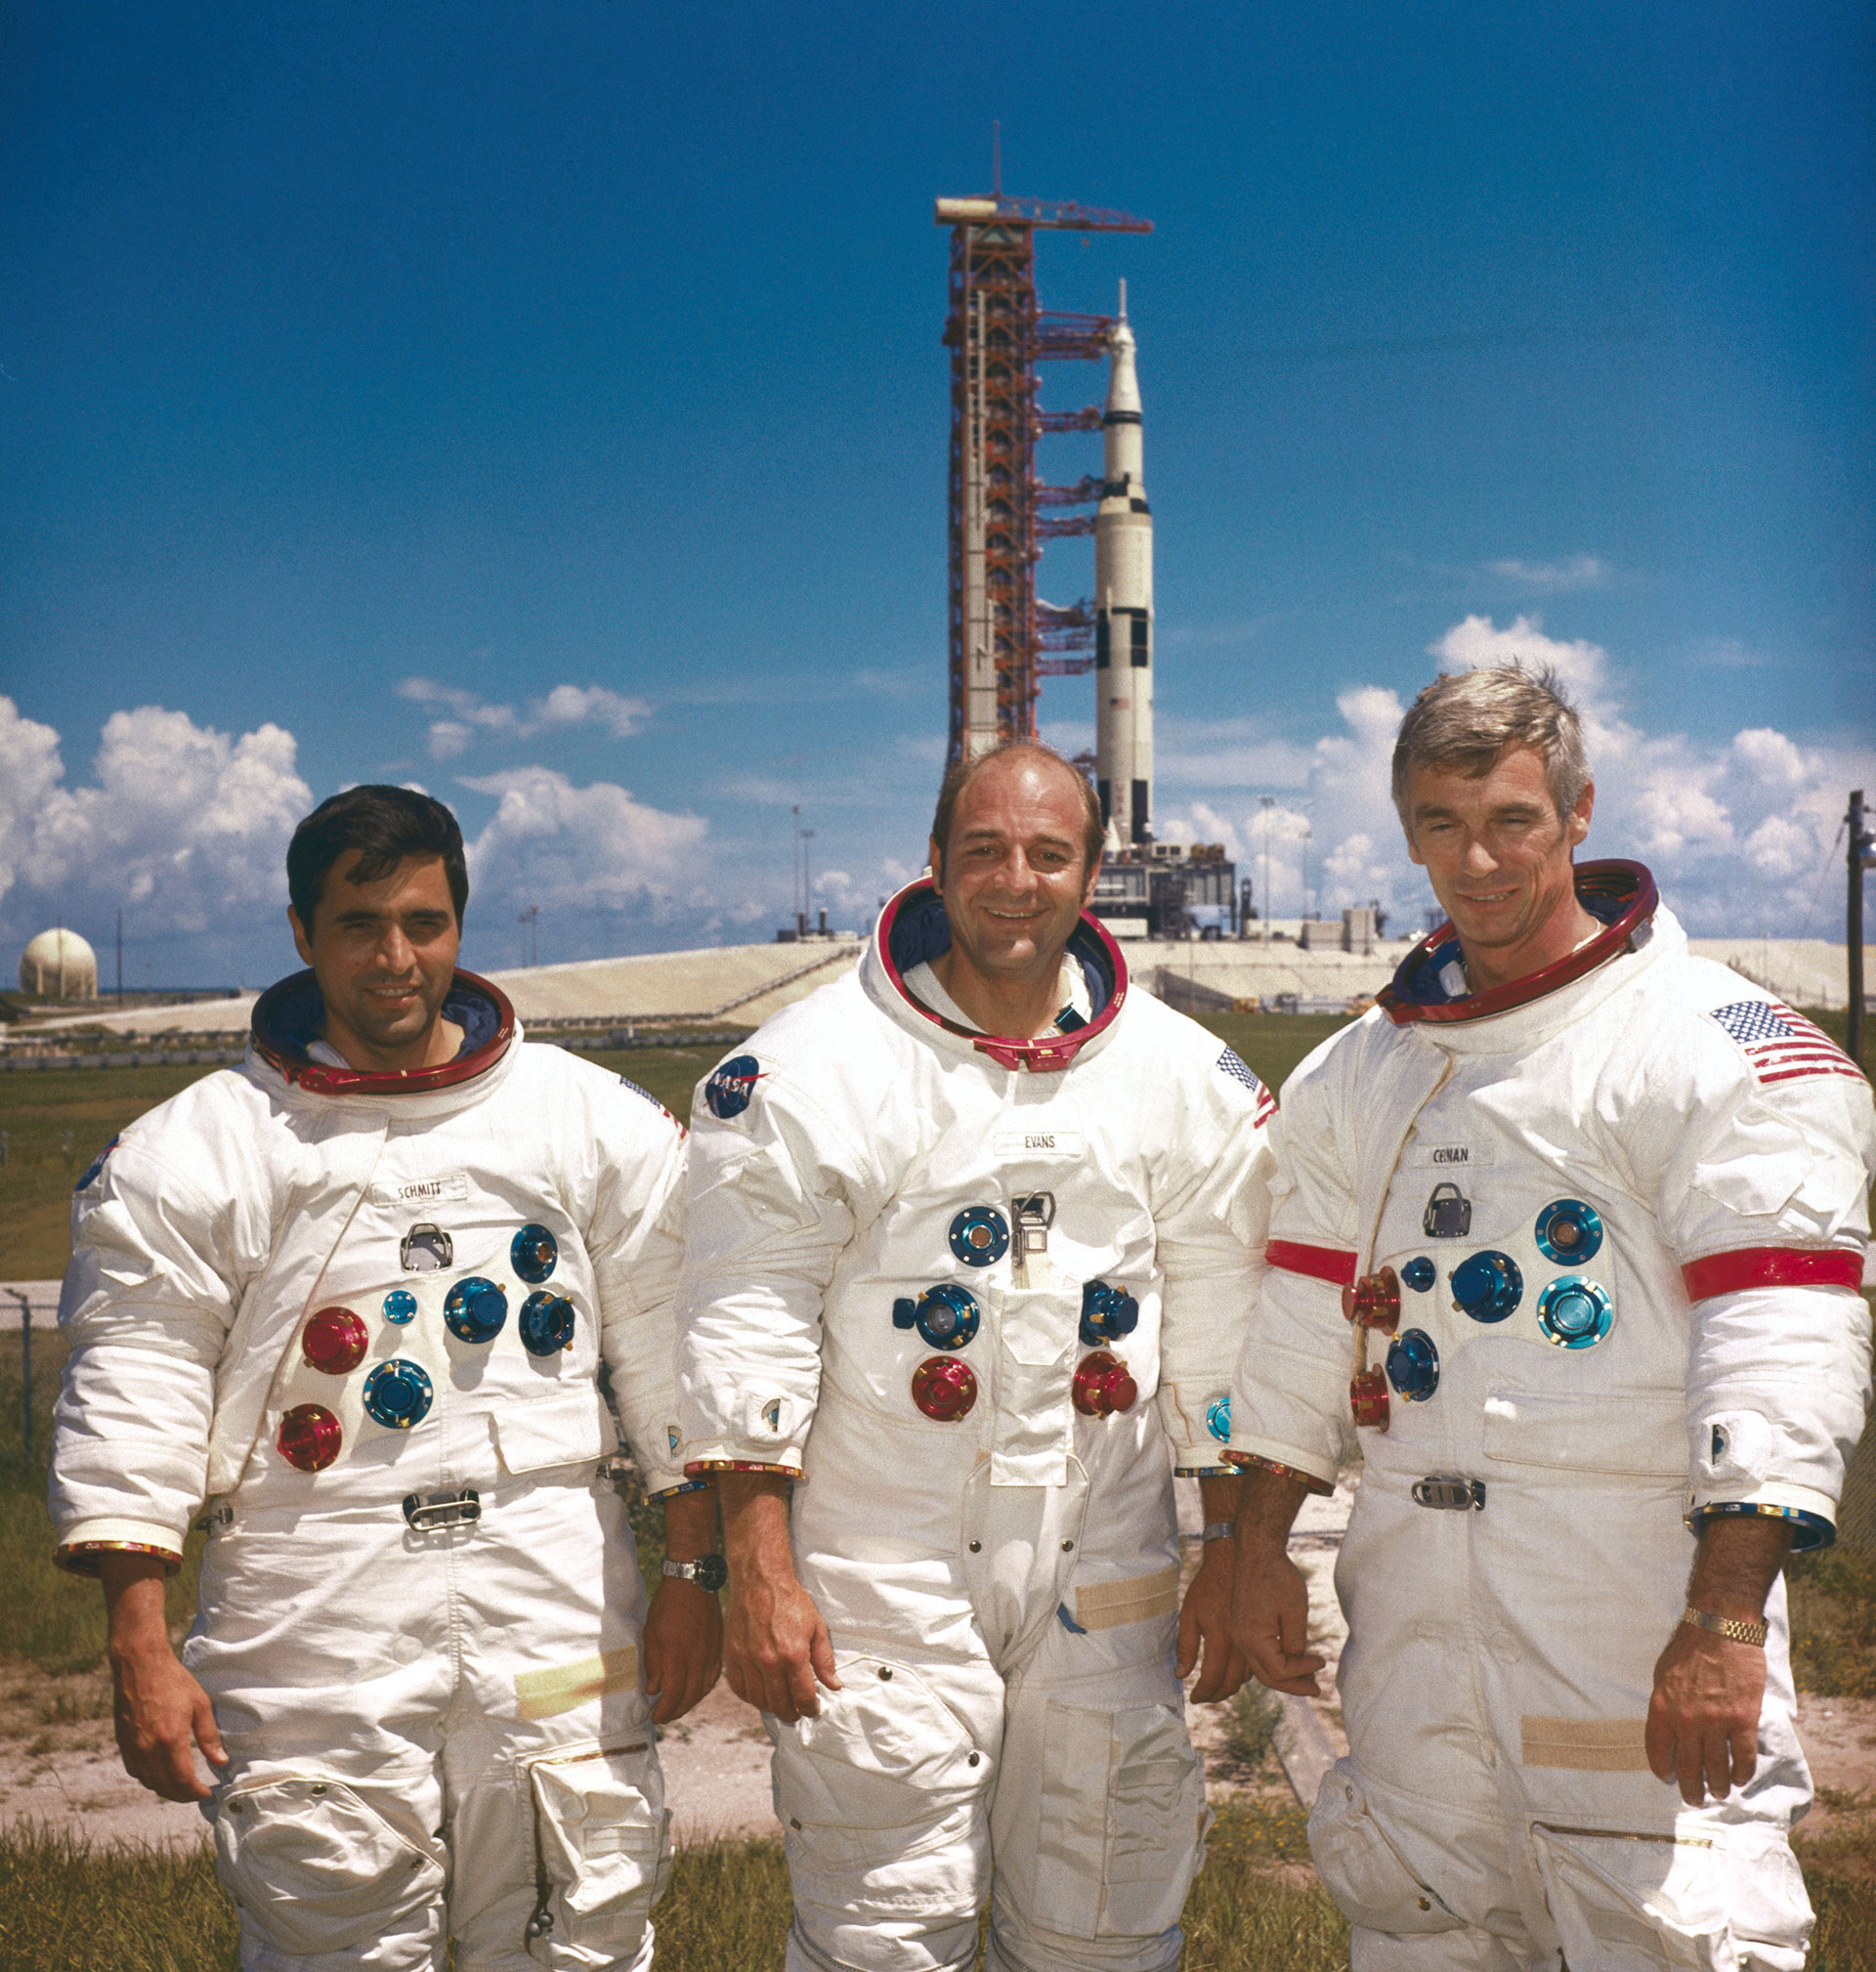 Los astronautas del Apolo 10 en Cabo Kennedy, en Florida: el piloto del módulo lunar Harrison Smith, el comandante del módulo lunar Ronald Evans y el comandante Eugene Cernan antes del lanzamiento 